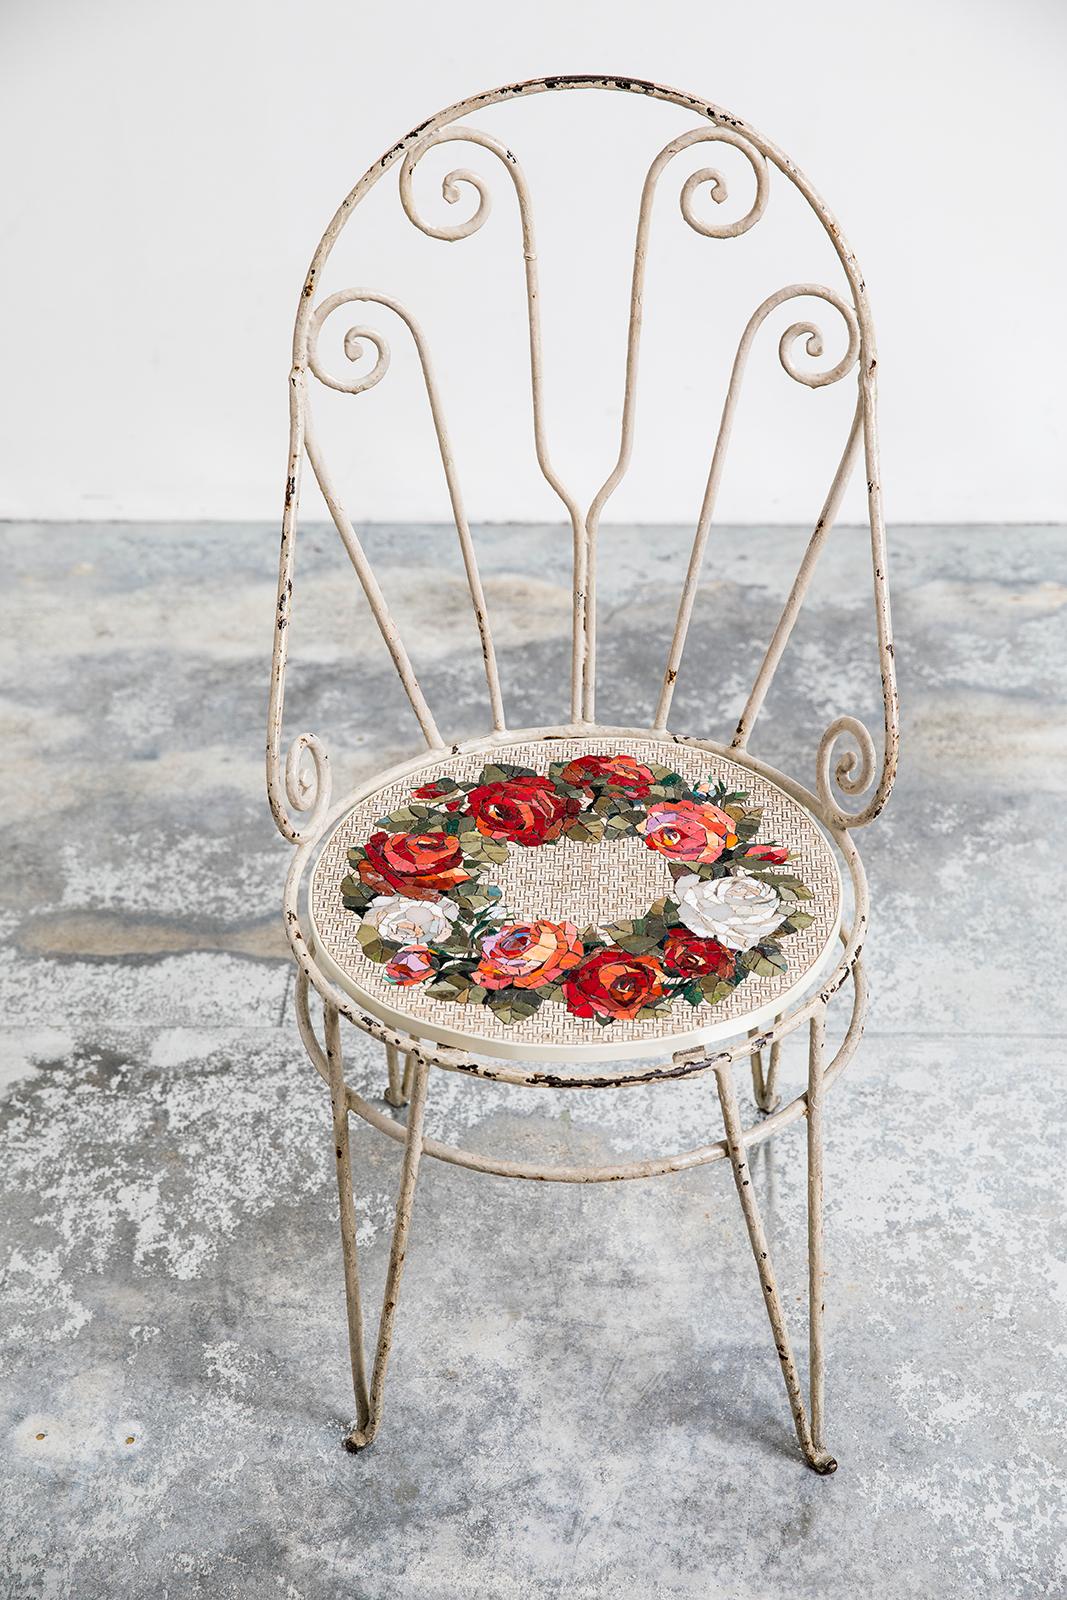 Post-Modern Sedia Con Wreath Antique Iron Chair by Yukiko Nagai For Sale